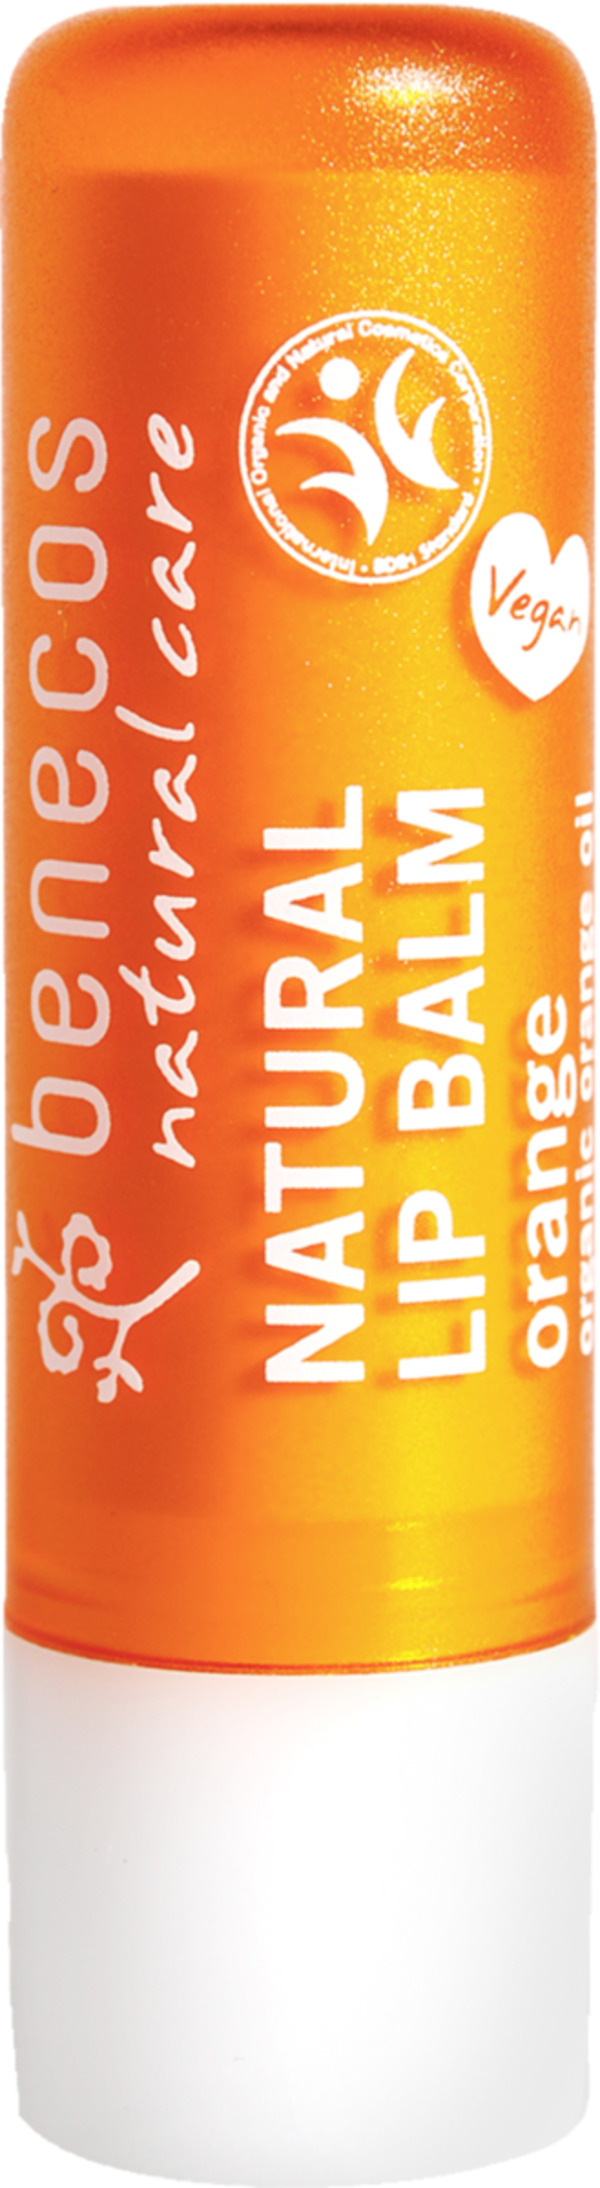 Bild 1 von benecos Natural Lip Balm Orange